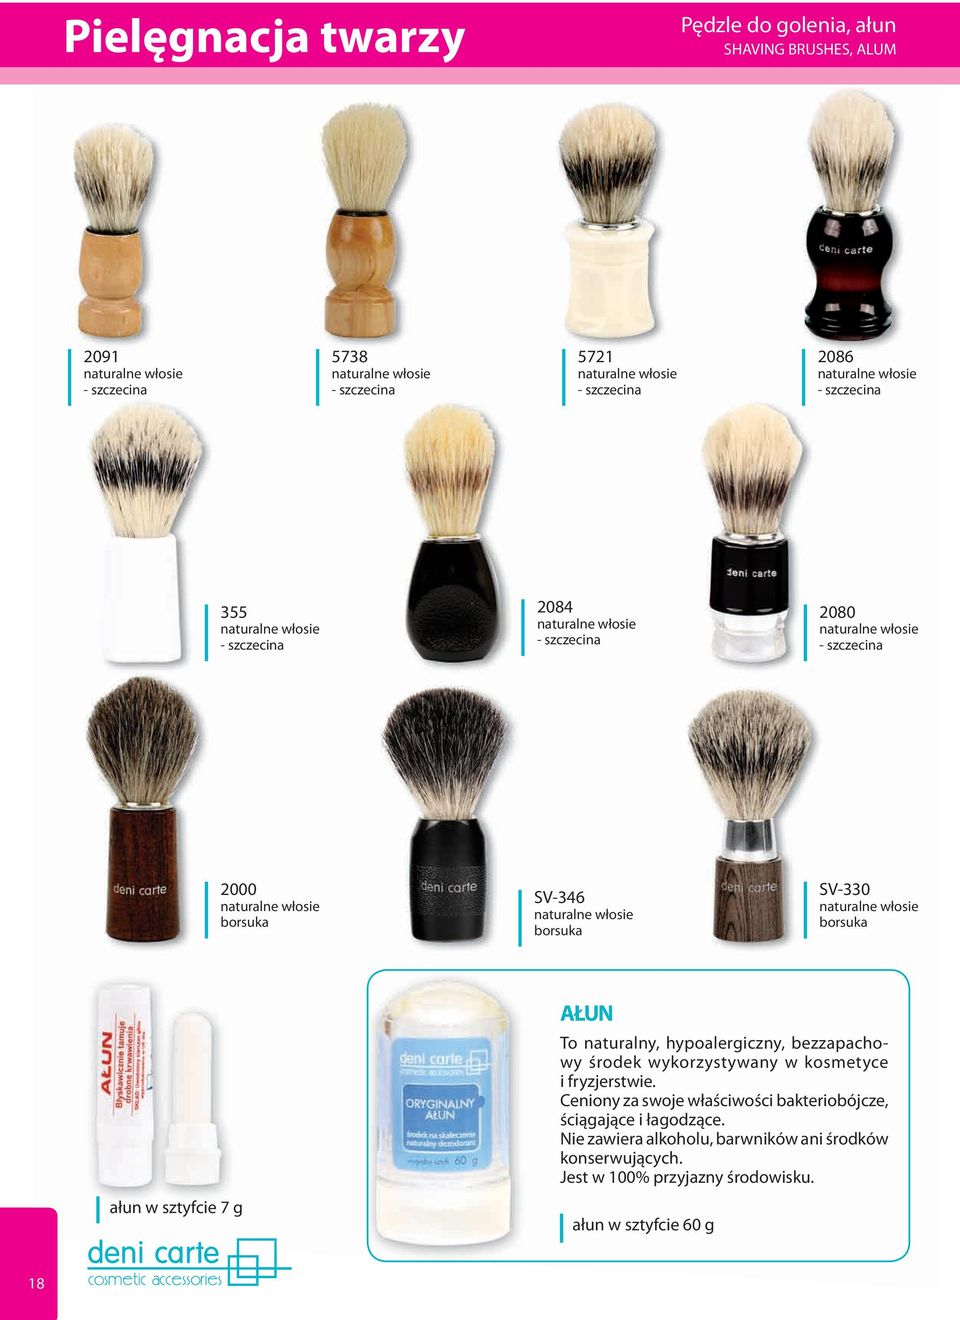 naturalne włosie borsuka SV-330 naturalne włosie borsuka ałun w sztyfcie 7 g AŁUN To naturalny, hypoalergiczny, bezzapachowy środek wykorzystywany w kosmetyce i fryzjerstwie